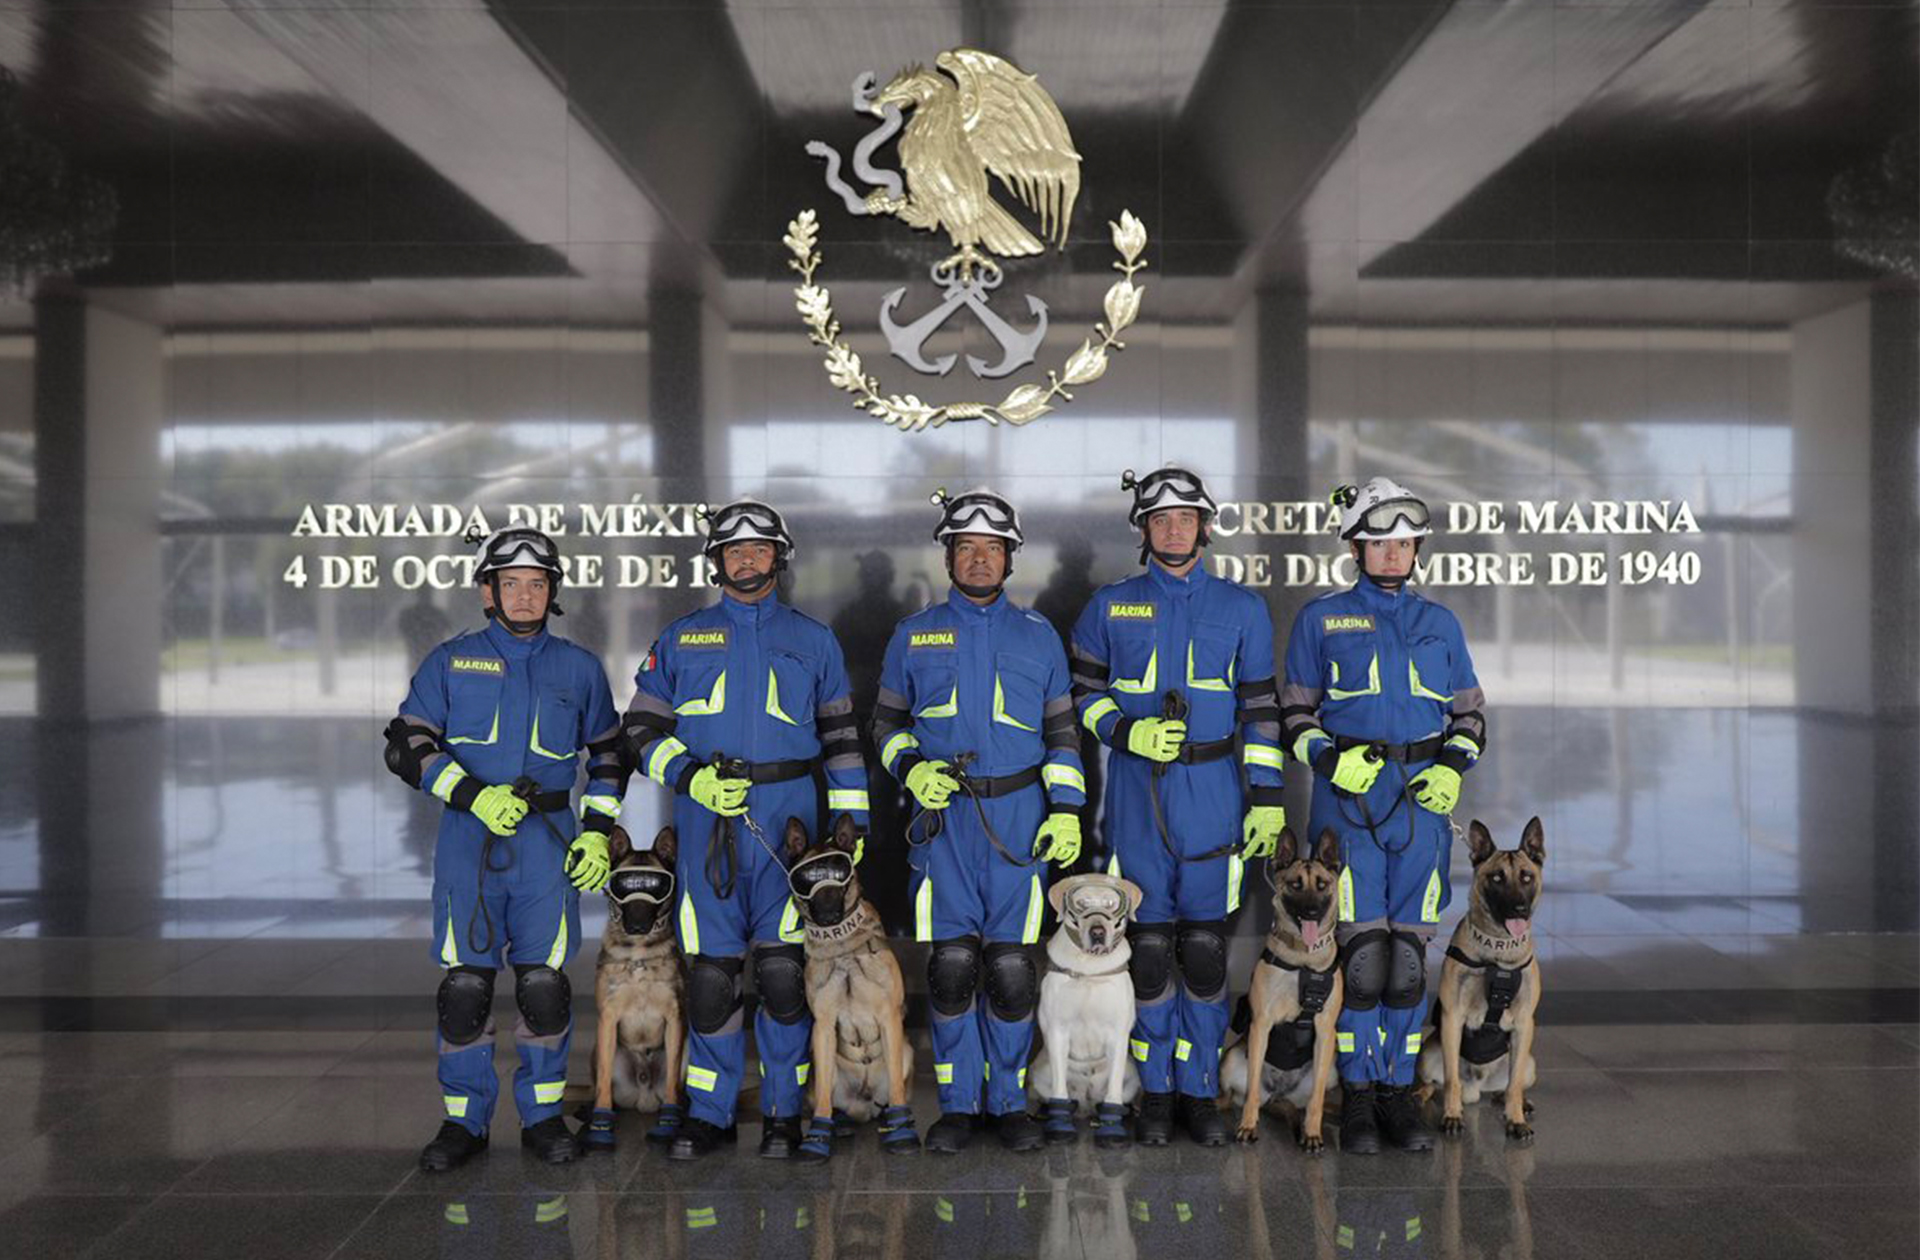 Los heróicos canes se han convertido en una de las principales atracciones de la Armada. (Foto:@Santiago_Arau)